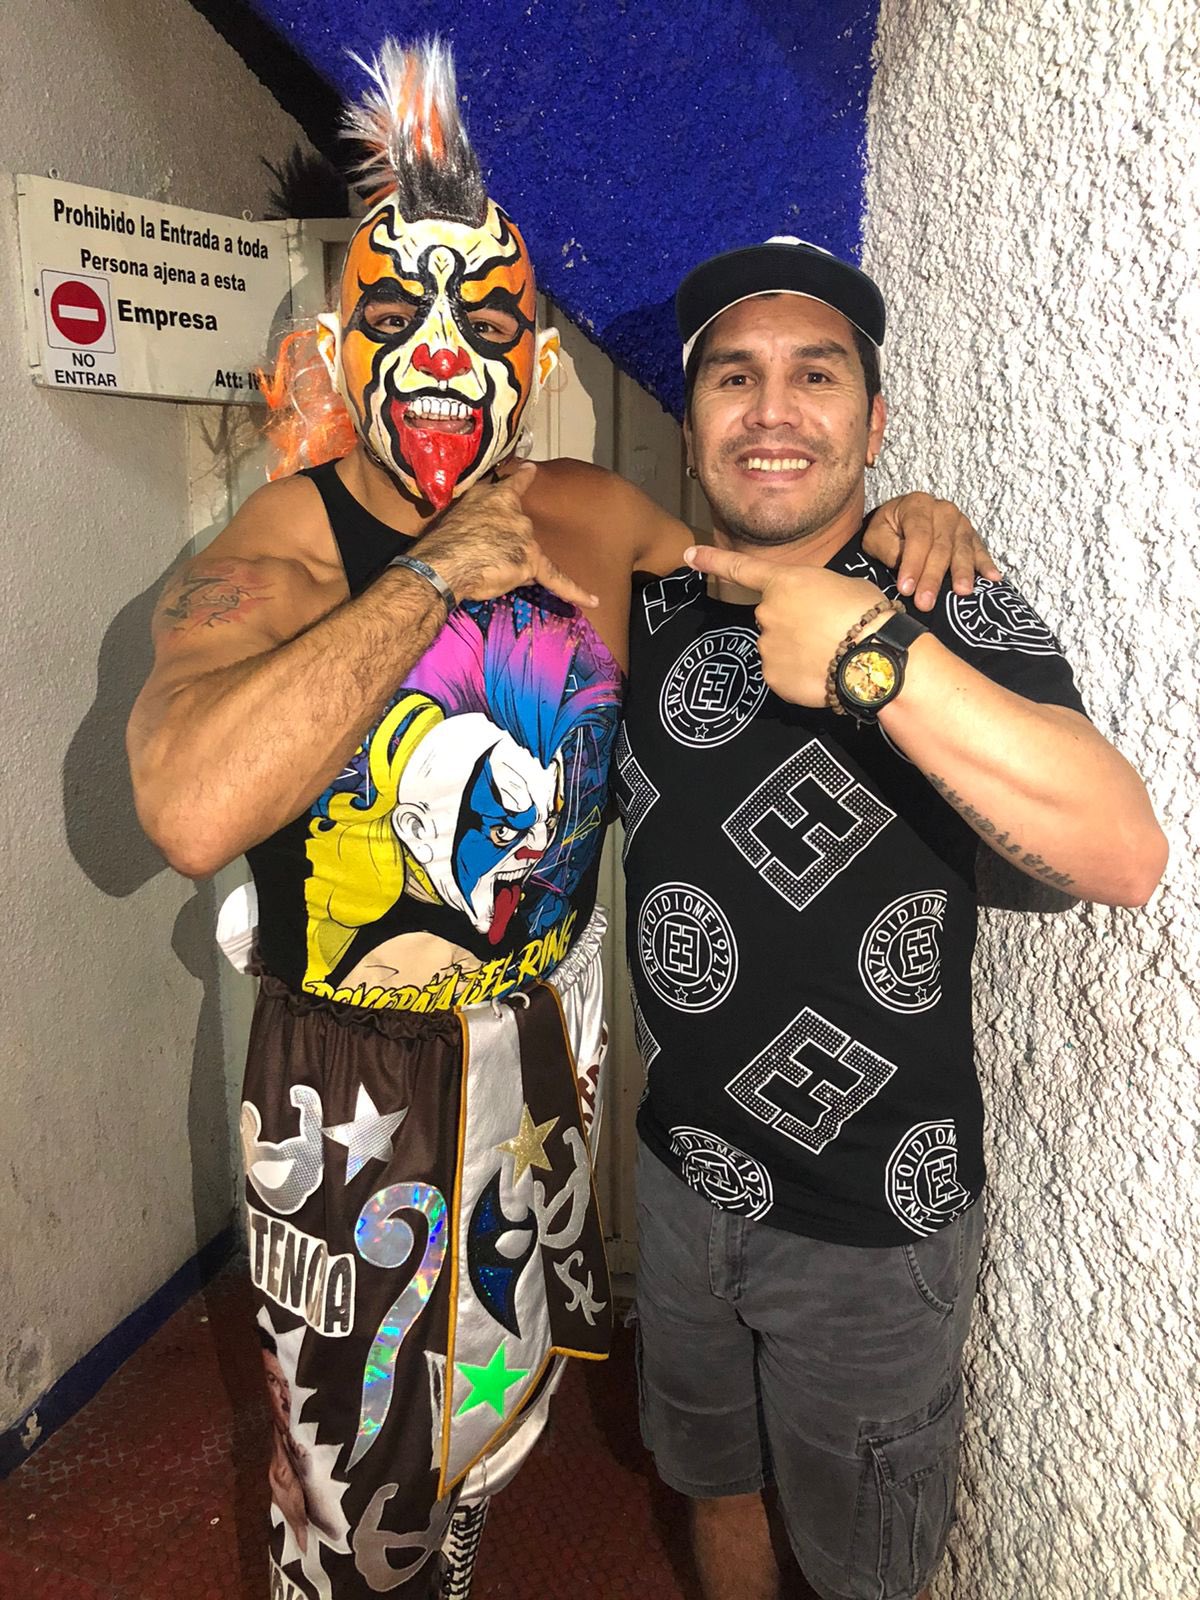 Por medio de Twitter el luchador compartió el encuentro con Salvador Cabañas (Foto: Twitter/@Psychooriginal)